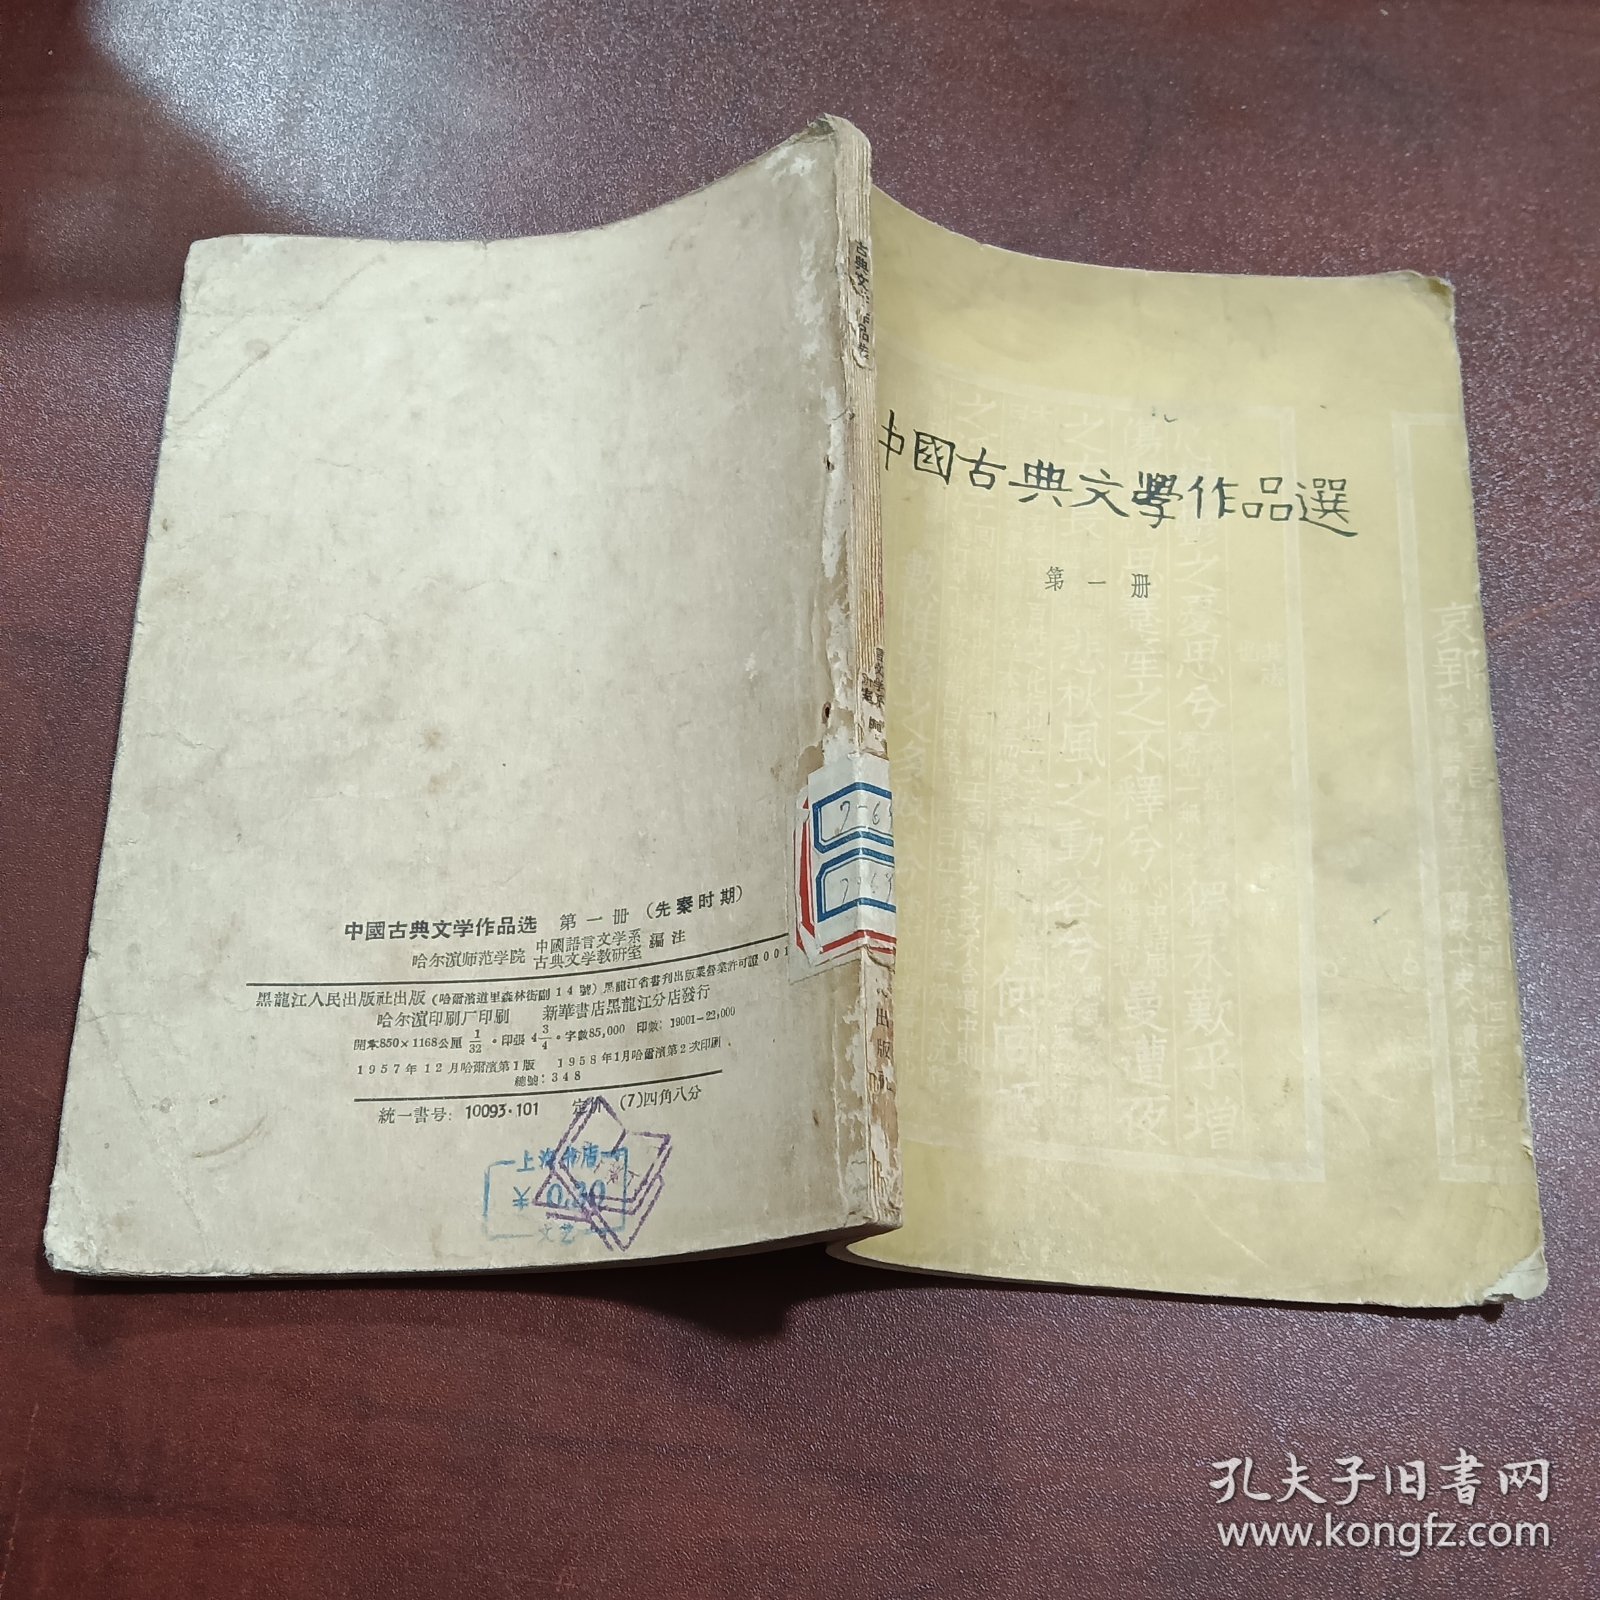 中国古典文学作品选（第一册）